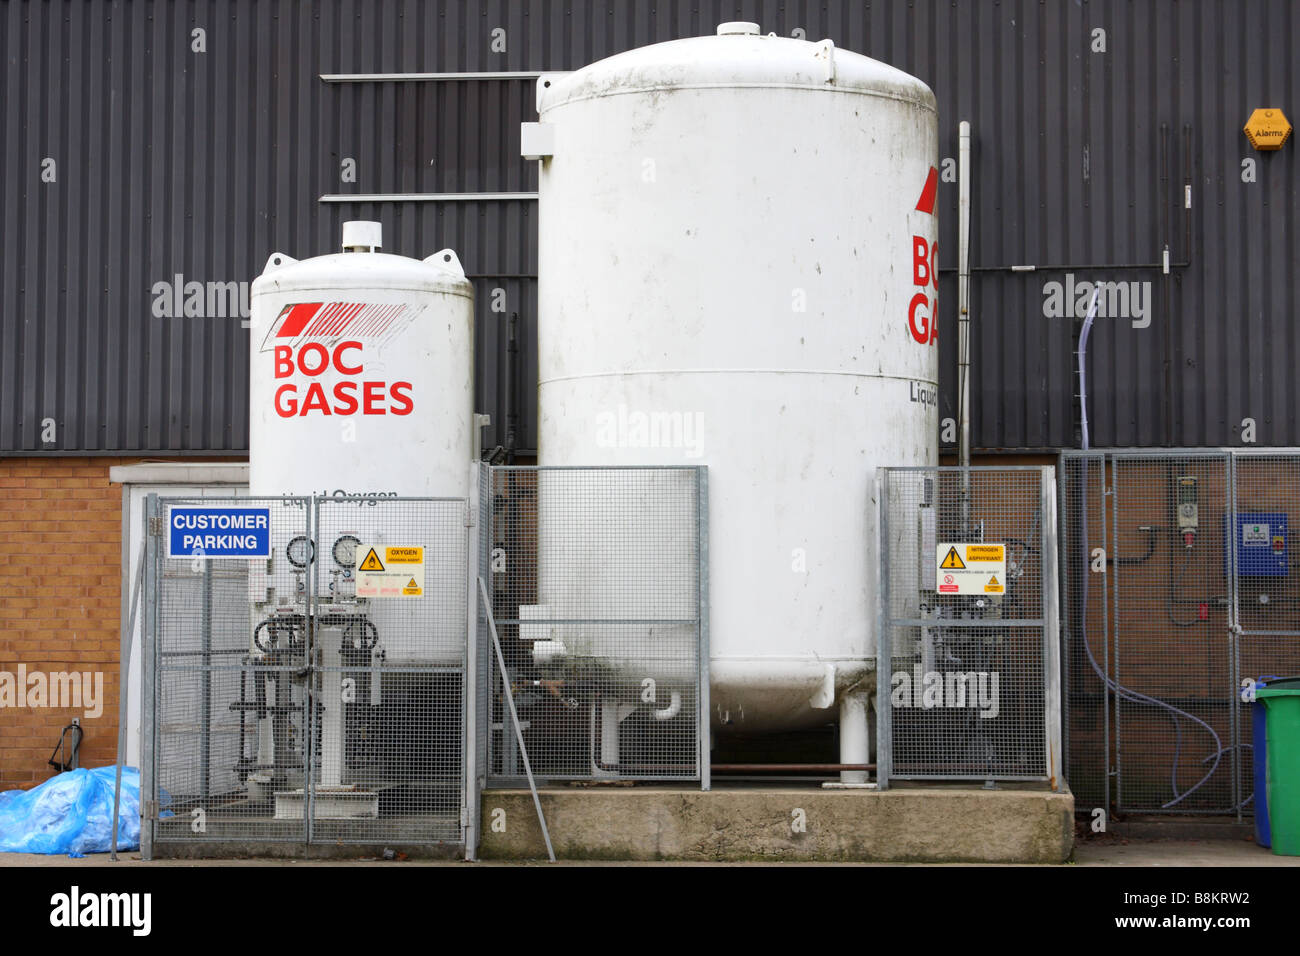 Les réservoirs de stockage de gaz BOC sur un site industriel au Royaume-Uni. Banque D'Images